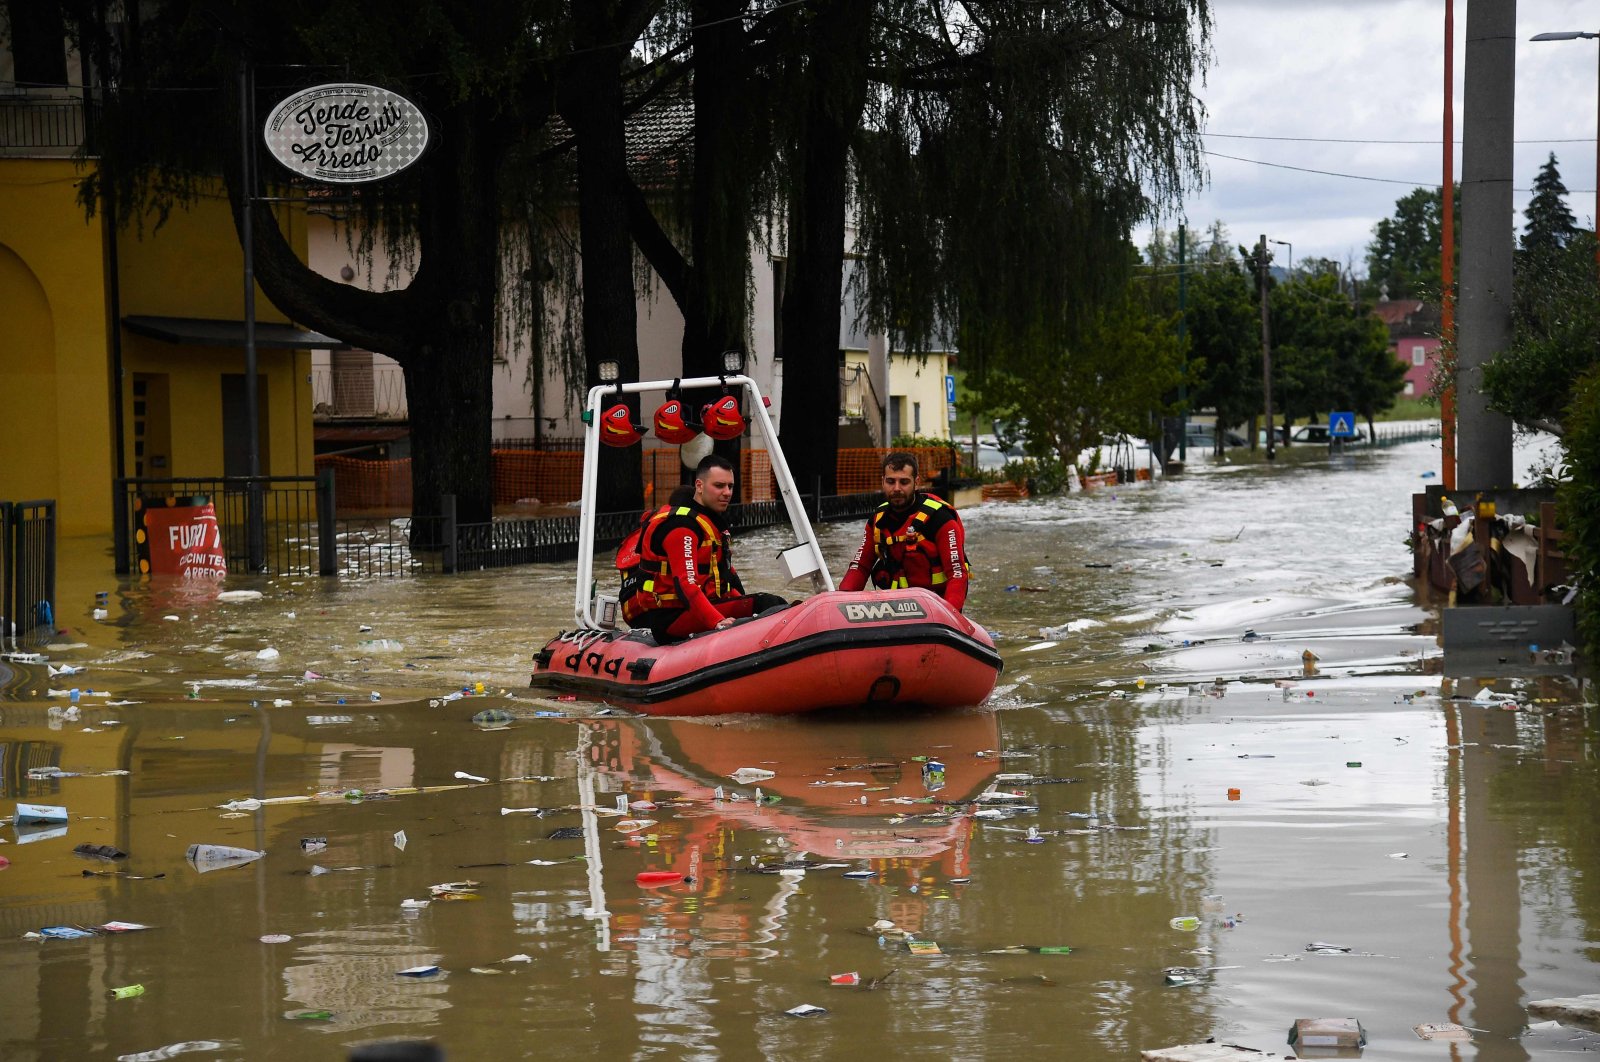 Italia menghitung biaya banjir mematikan karena lebih banyak desa dievakuasi